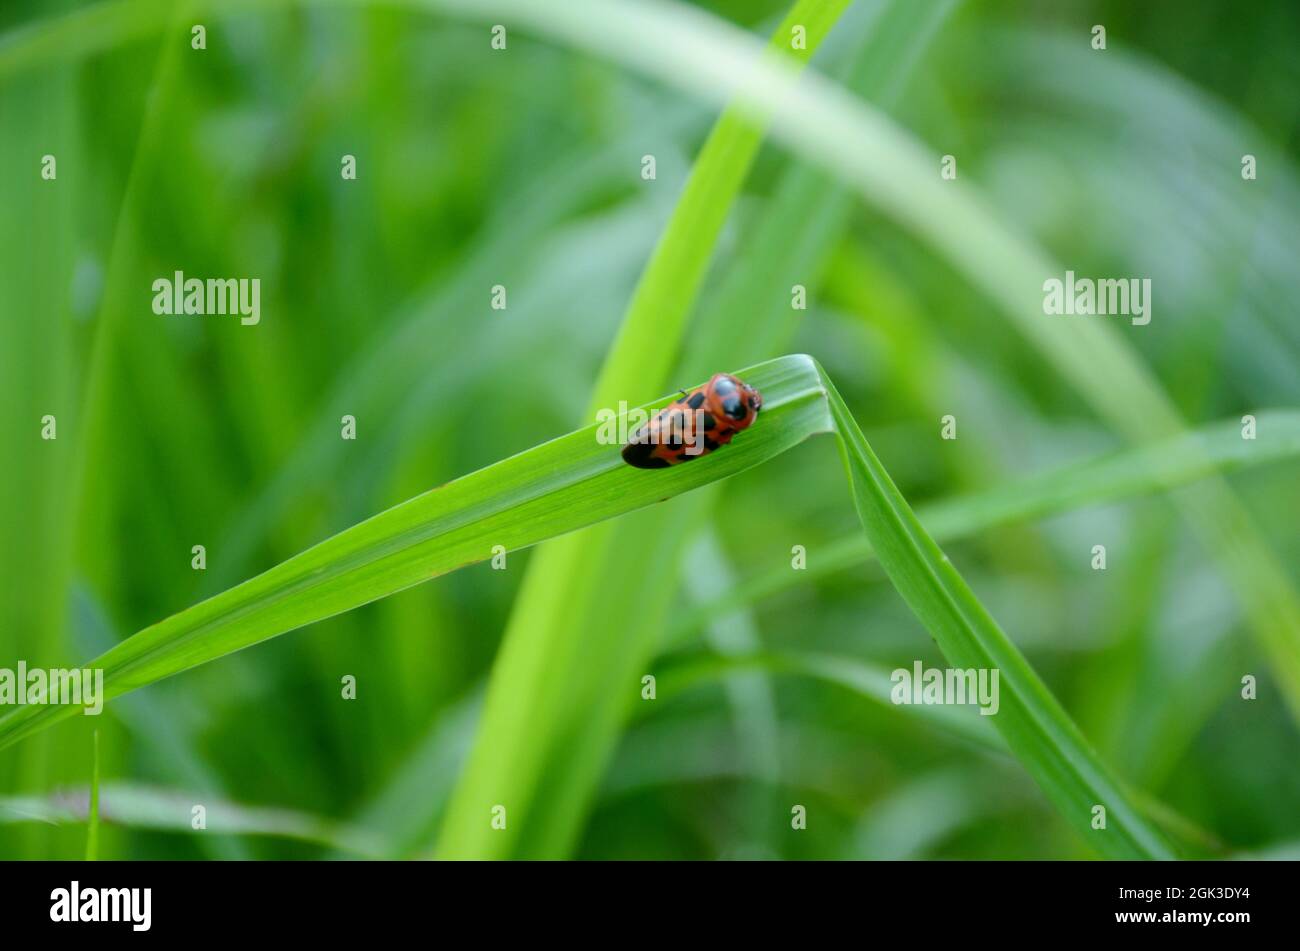 Nahaufnahme der kleinen rot-schwarzen Farbe weevil Insekt halten auf Paddy Pflanzenblatt über unscharf grün braun Hintergrund. Stockfoto